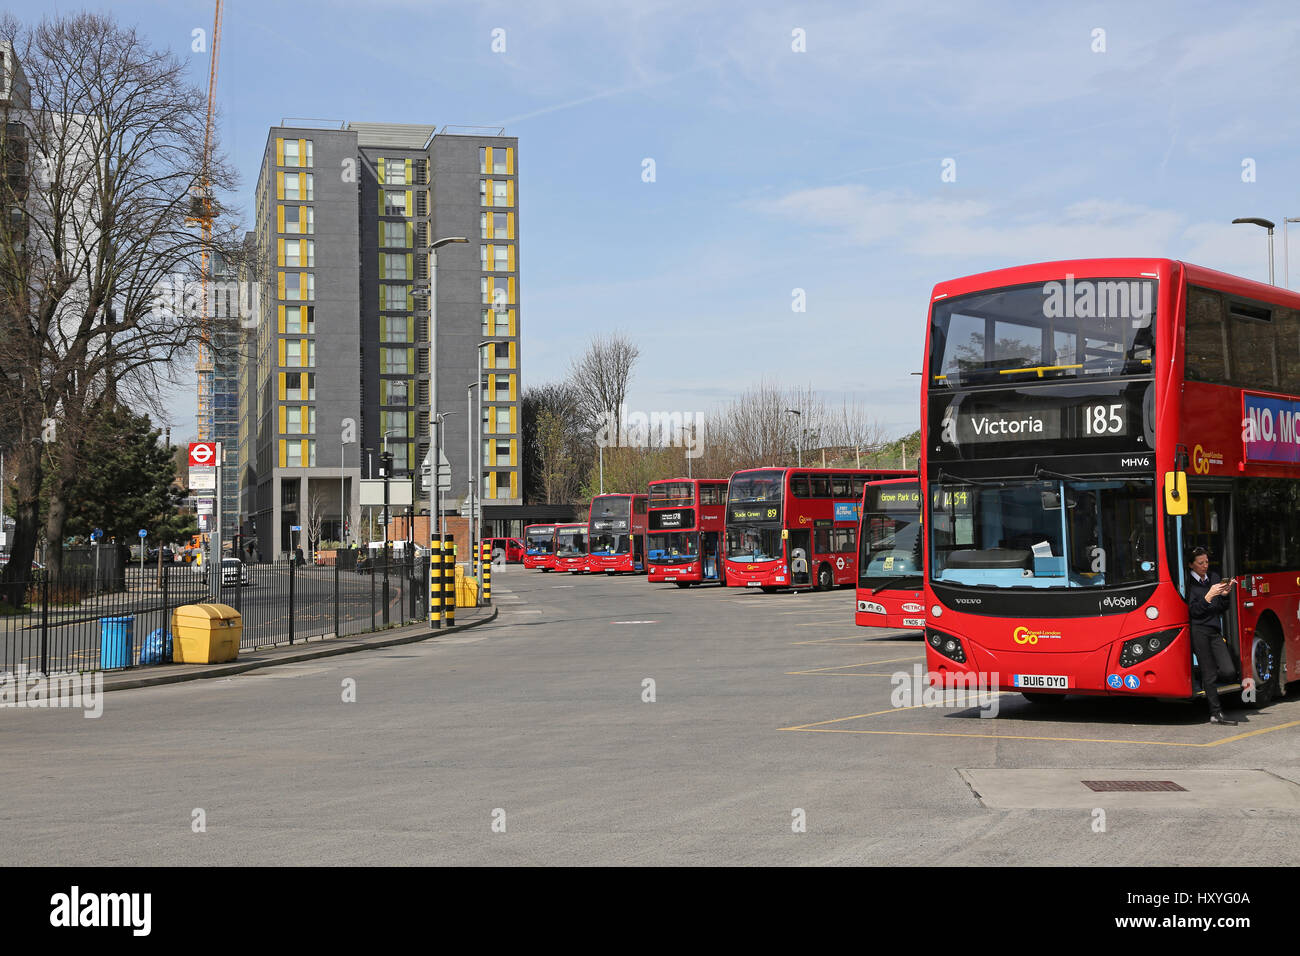 Lewisham bus station in Southeast London, UK Stock Photo